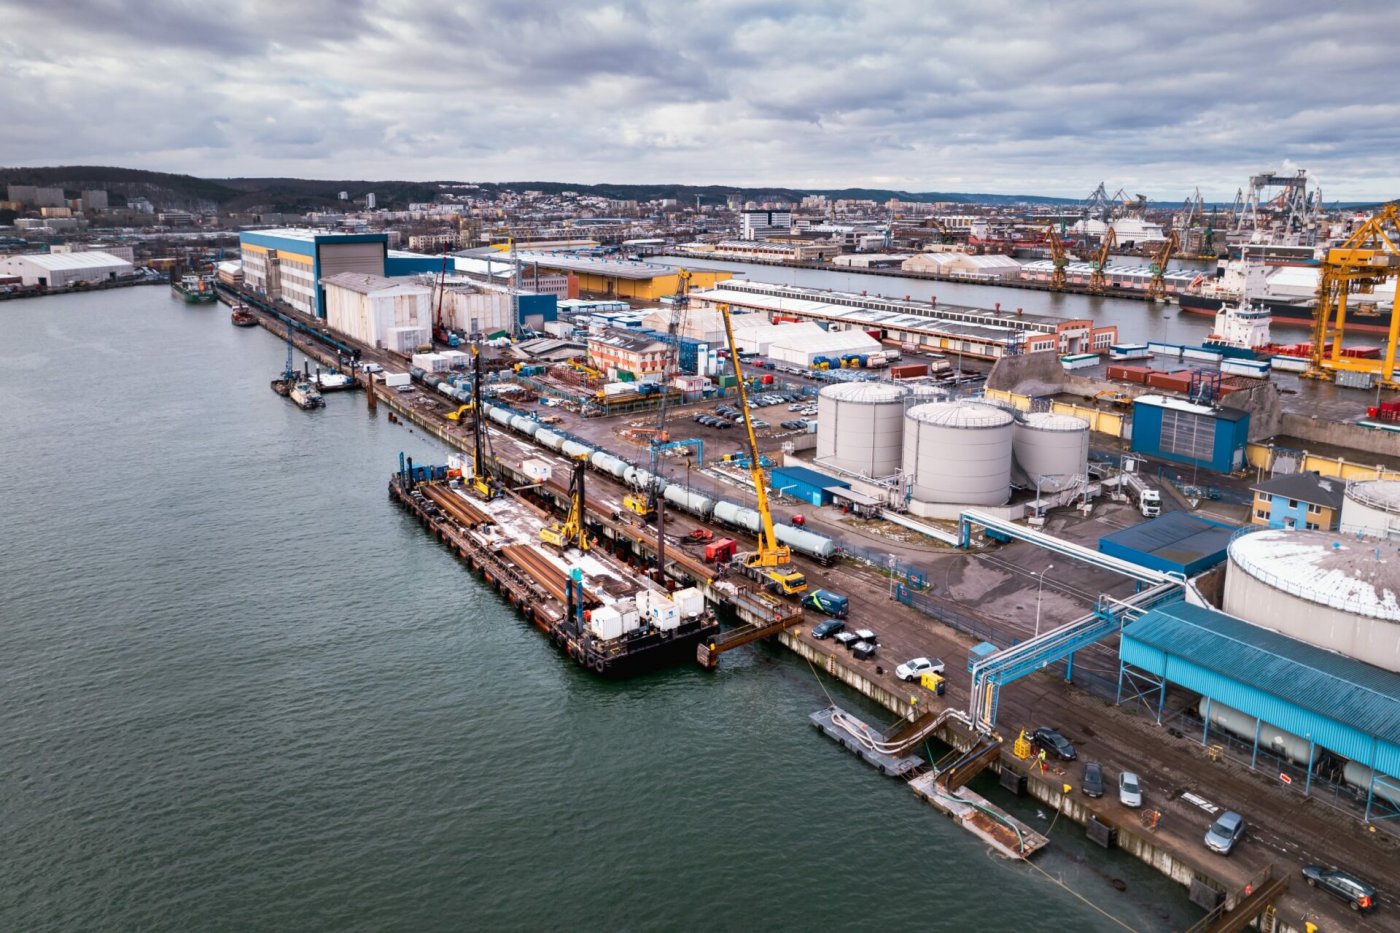 Rozwój portu to rozwój miasta. Fot. Port Gdynia / FB